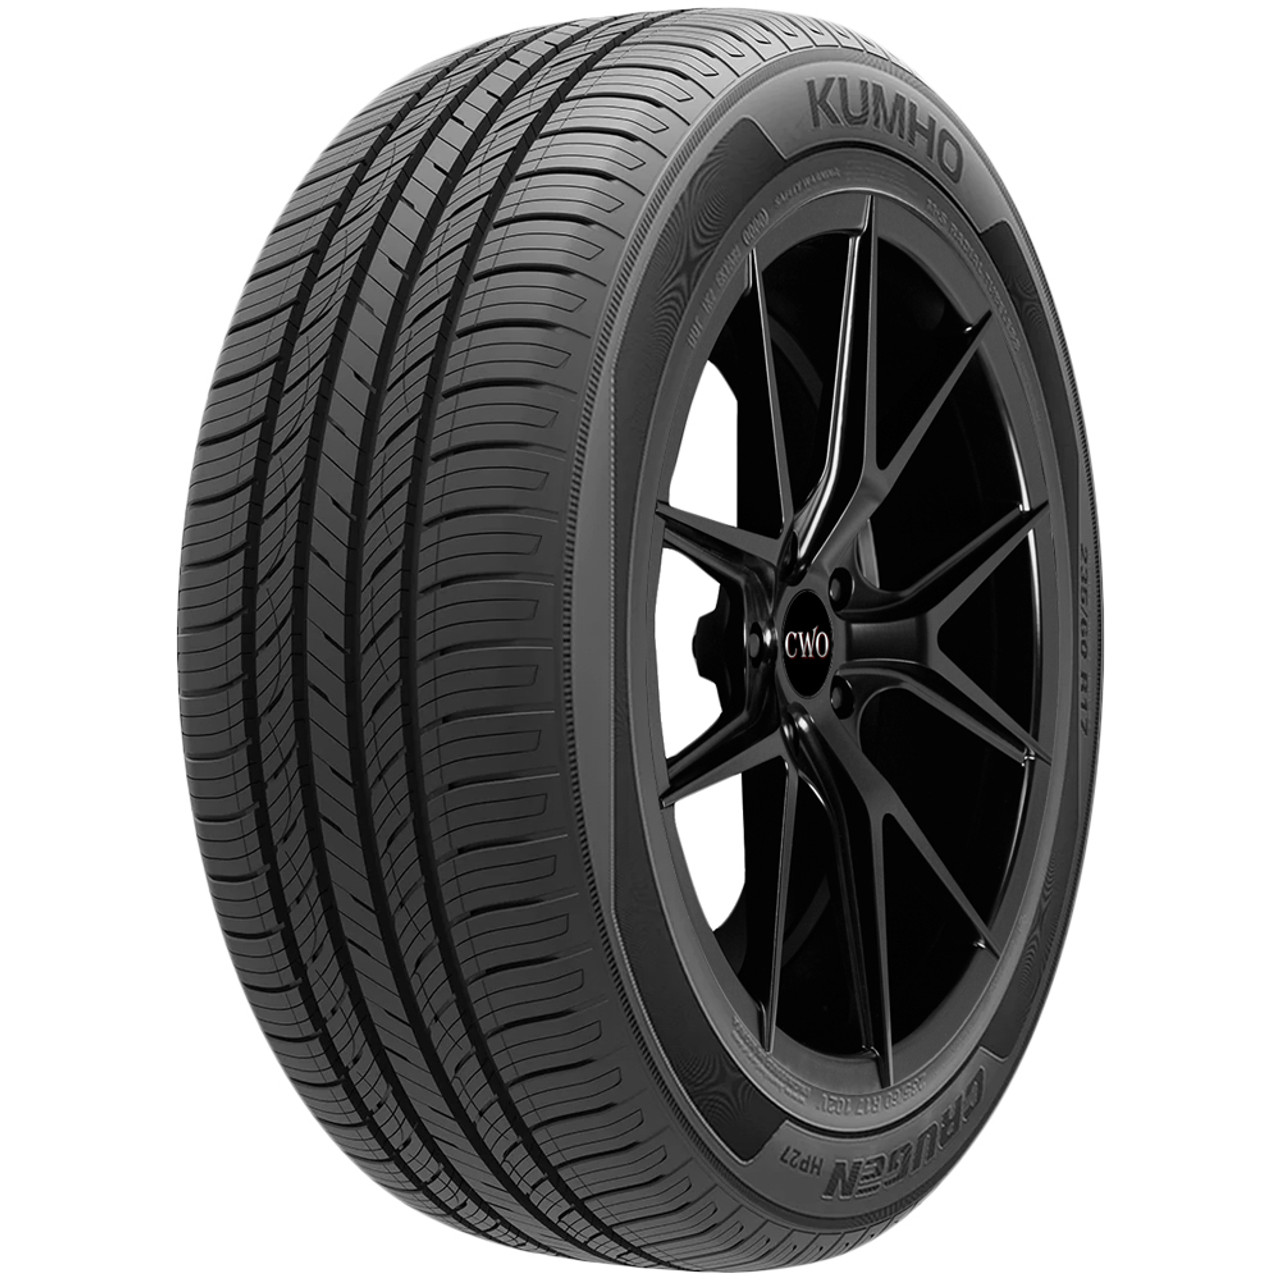 P235/65R18 Kumho Crugen HP27 110V XL Black Wall Tire 2346363 - ShopCWO